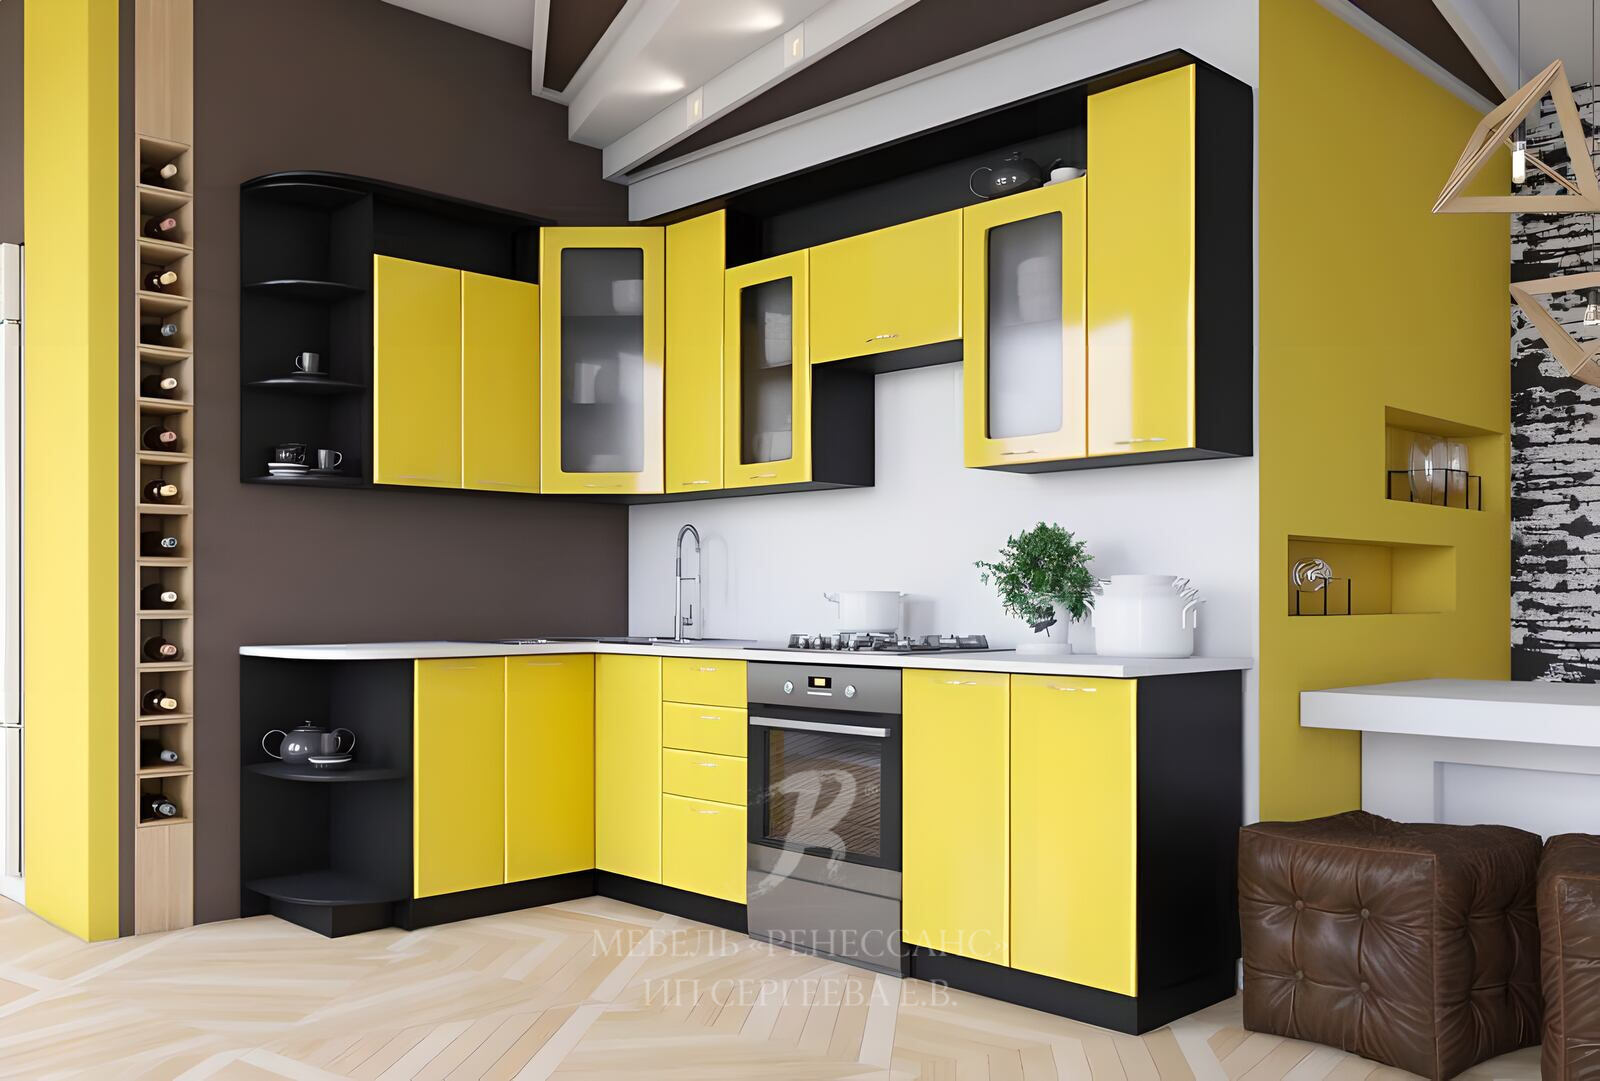 Мебель минск купить цены. Кухонный гарнитур. Угловые кухни. Желтый кухонный гарнитур. Кухонная мебель угловая.